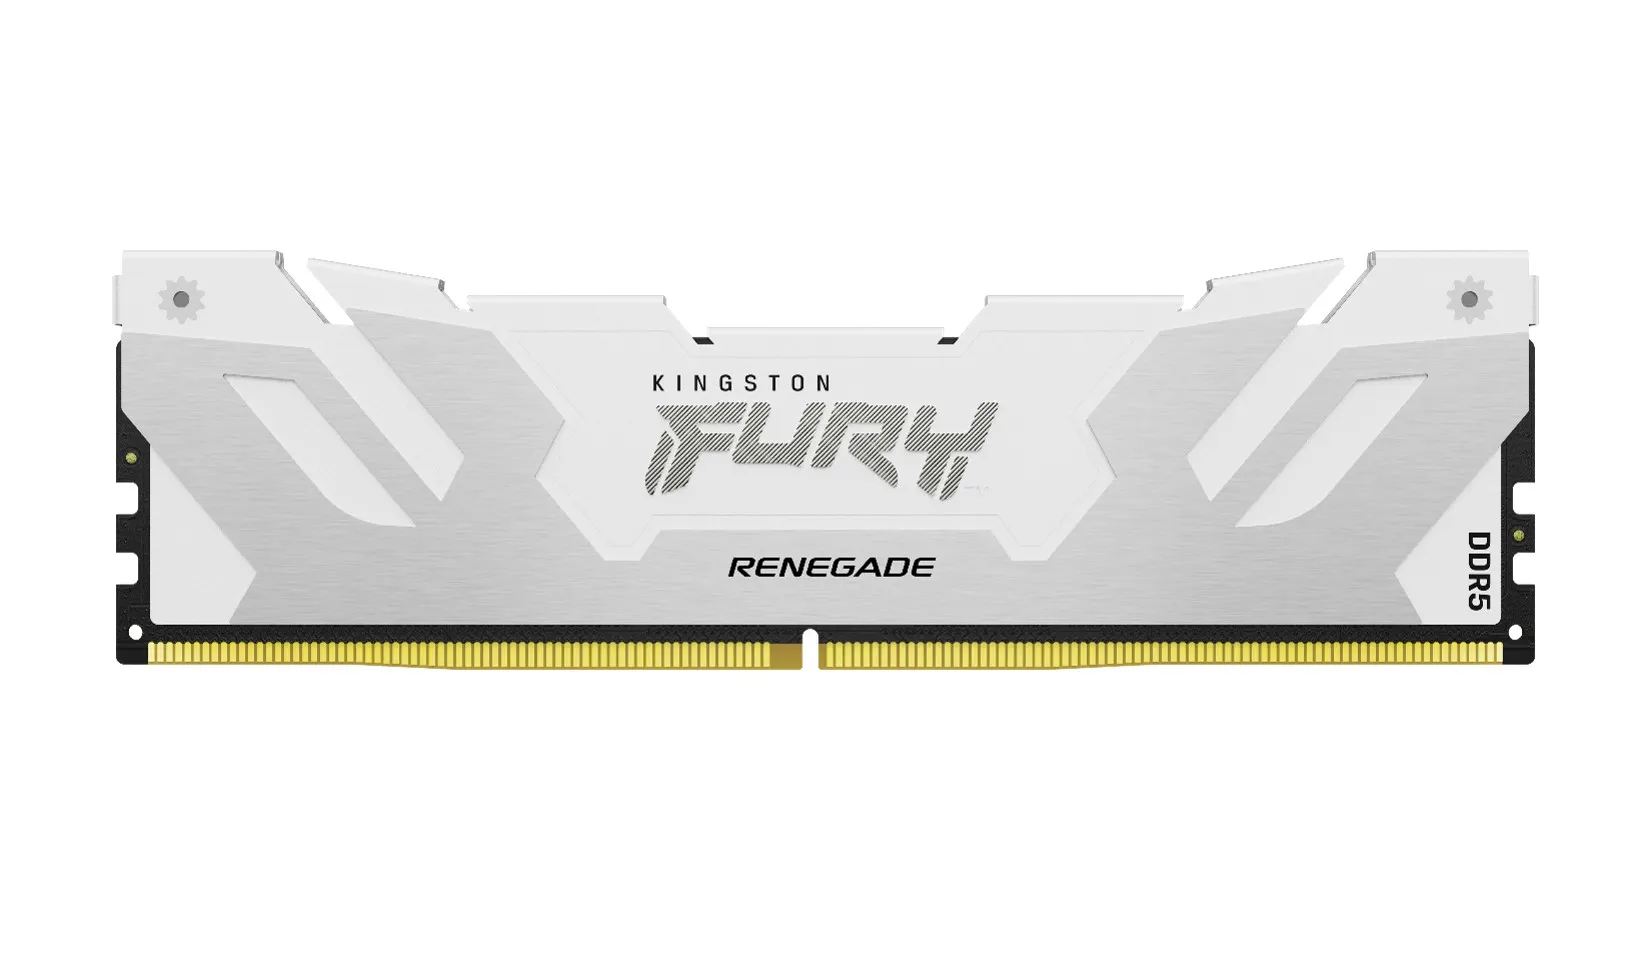 Kingston FURY mở rộng thiết kế giao diện cho dòng DDR5 với bộ tản nhiệt màu trắng